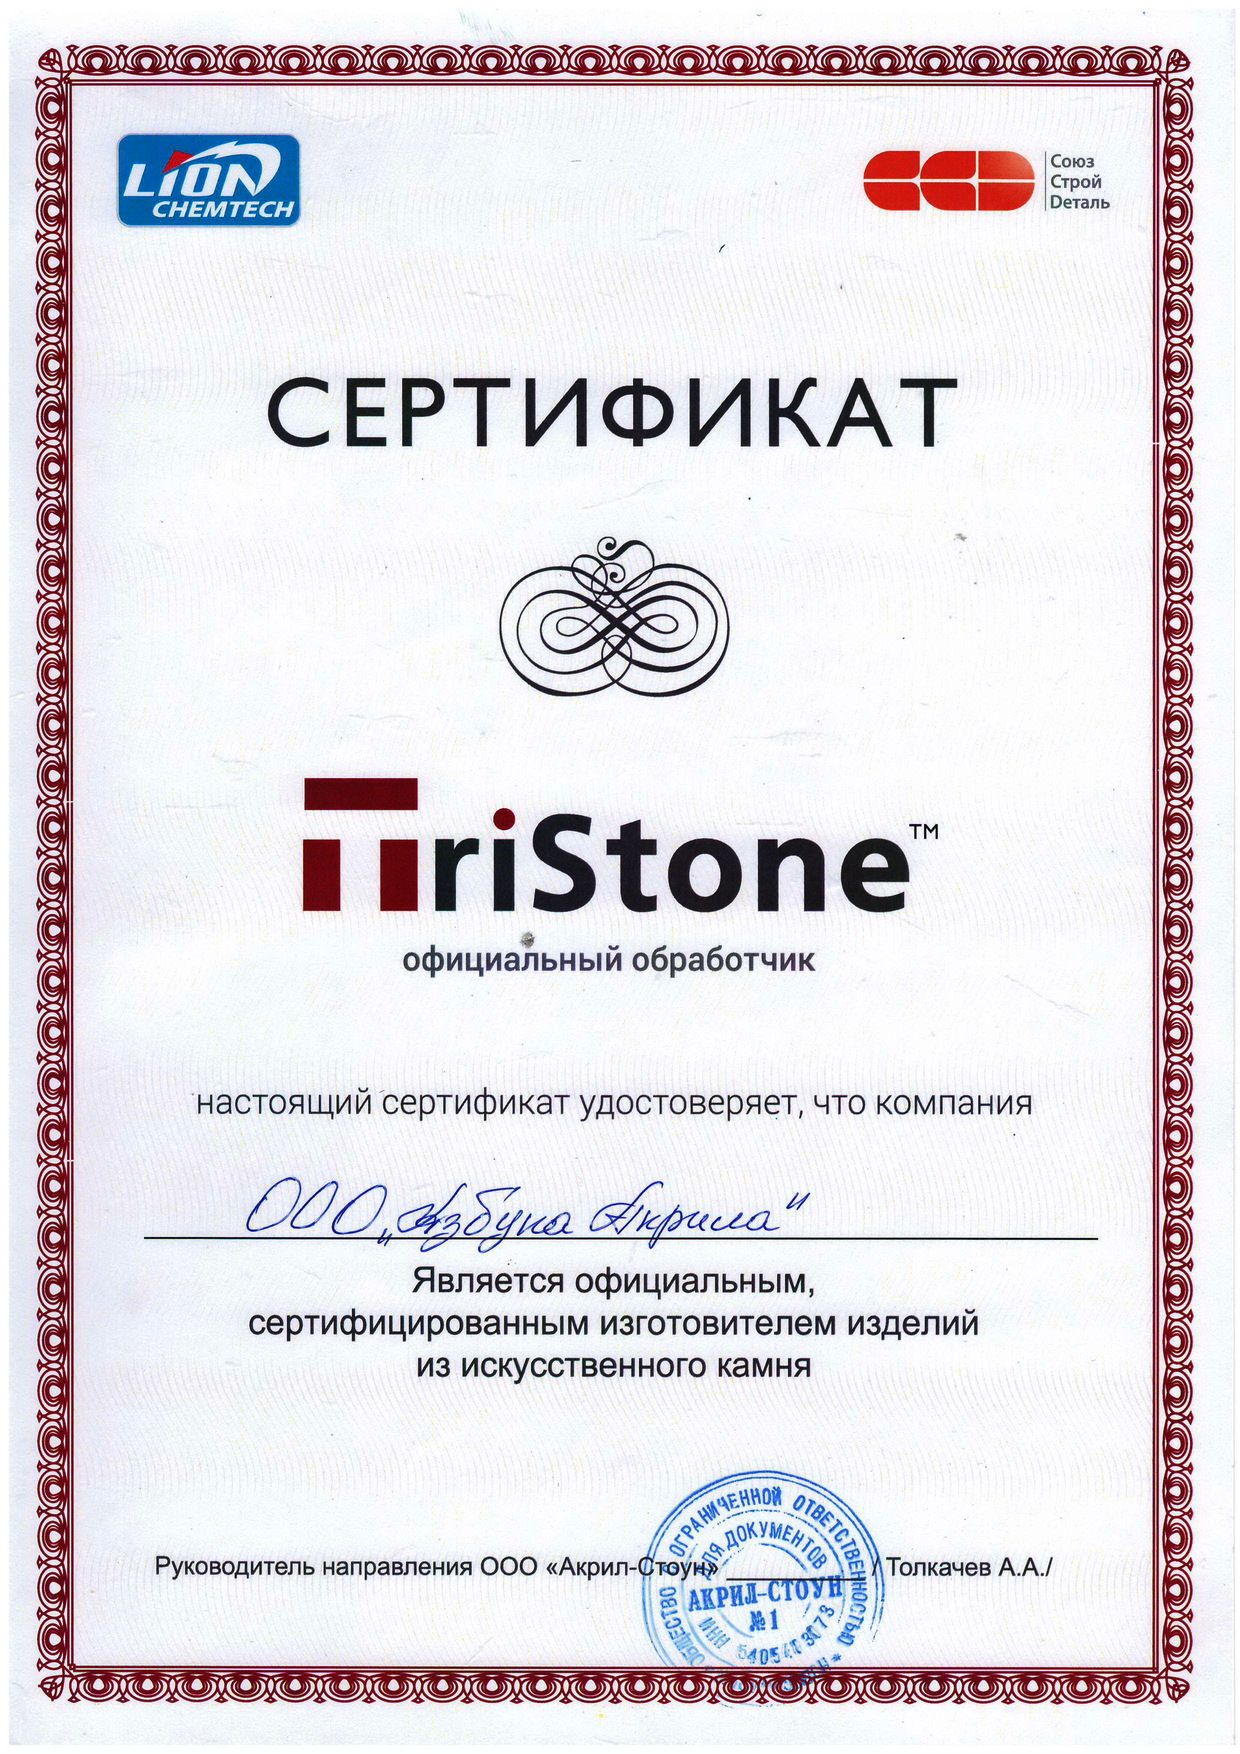 Certificate Tristone